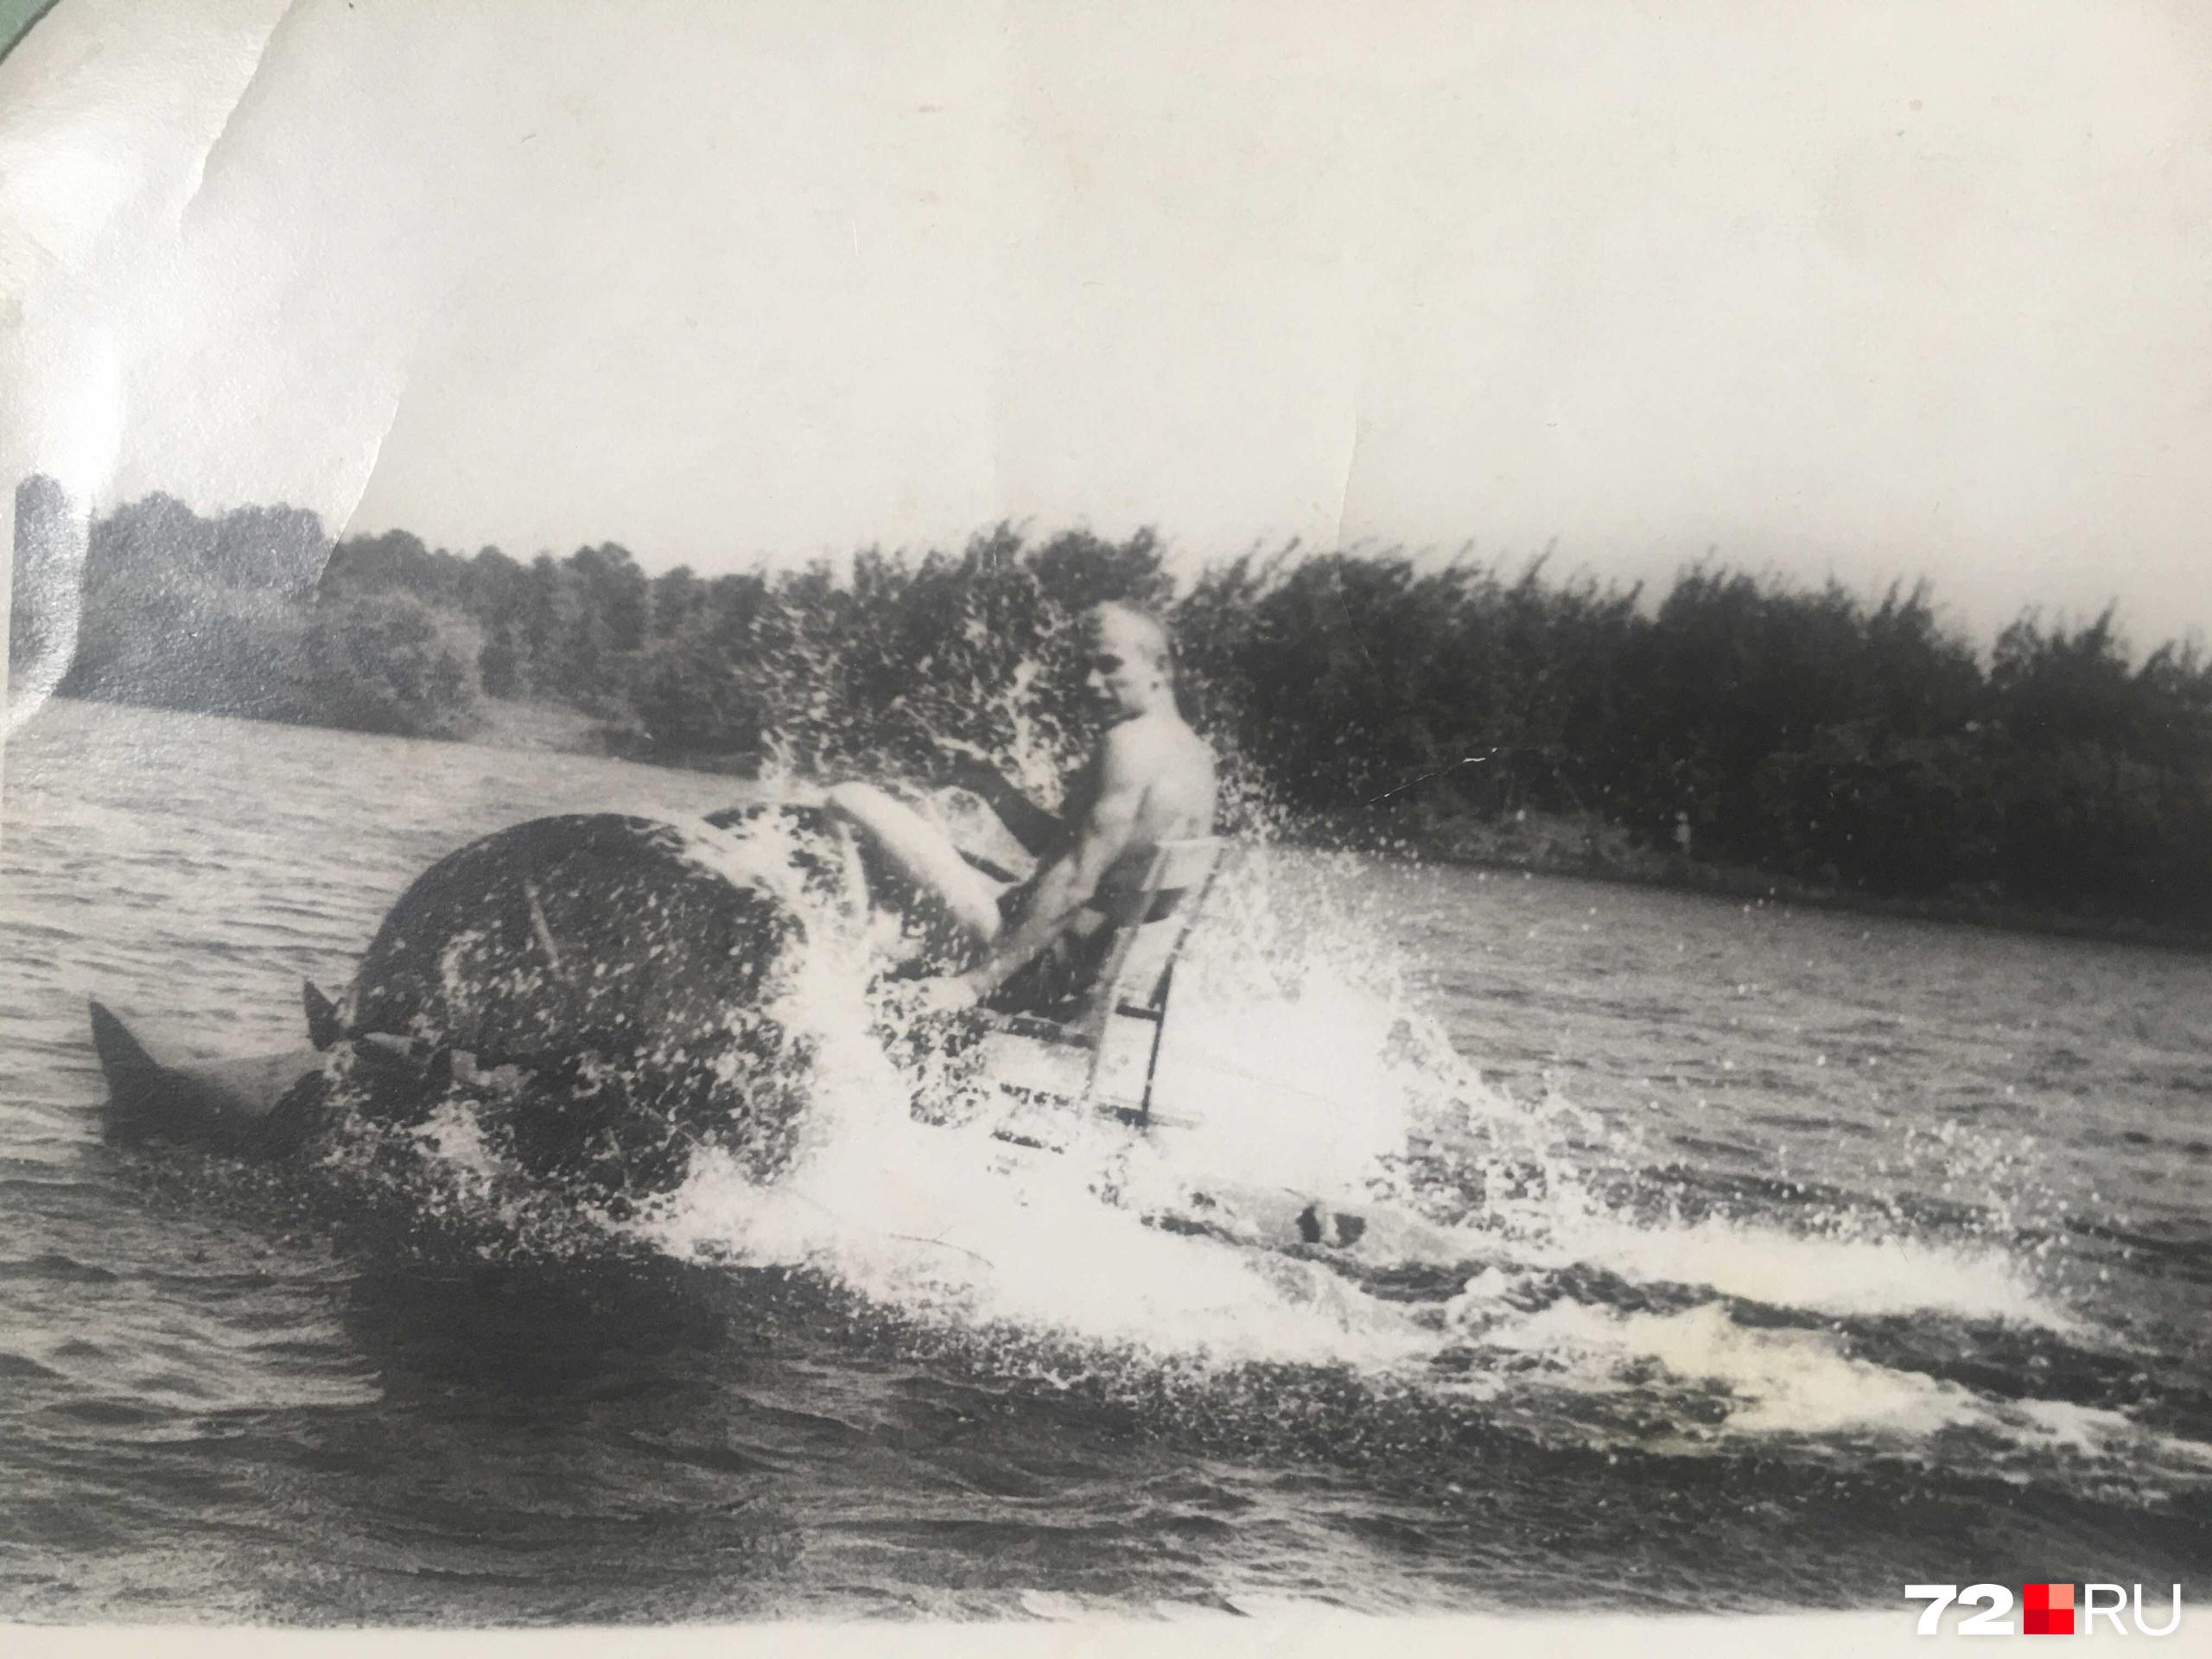 Вот так было на Верхнем Бору в 1972 году. Молодой тюменец гоняет на таком интересном катамаране по воде